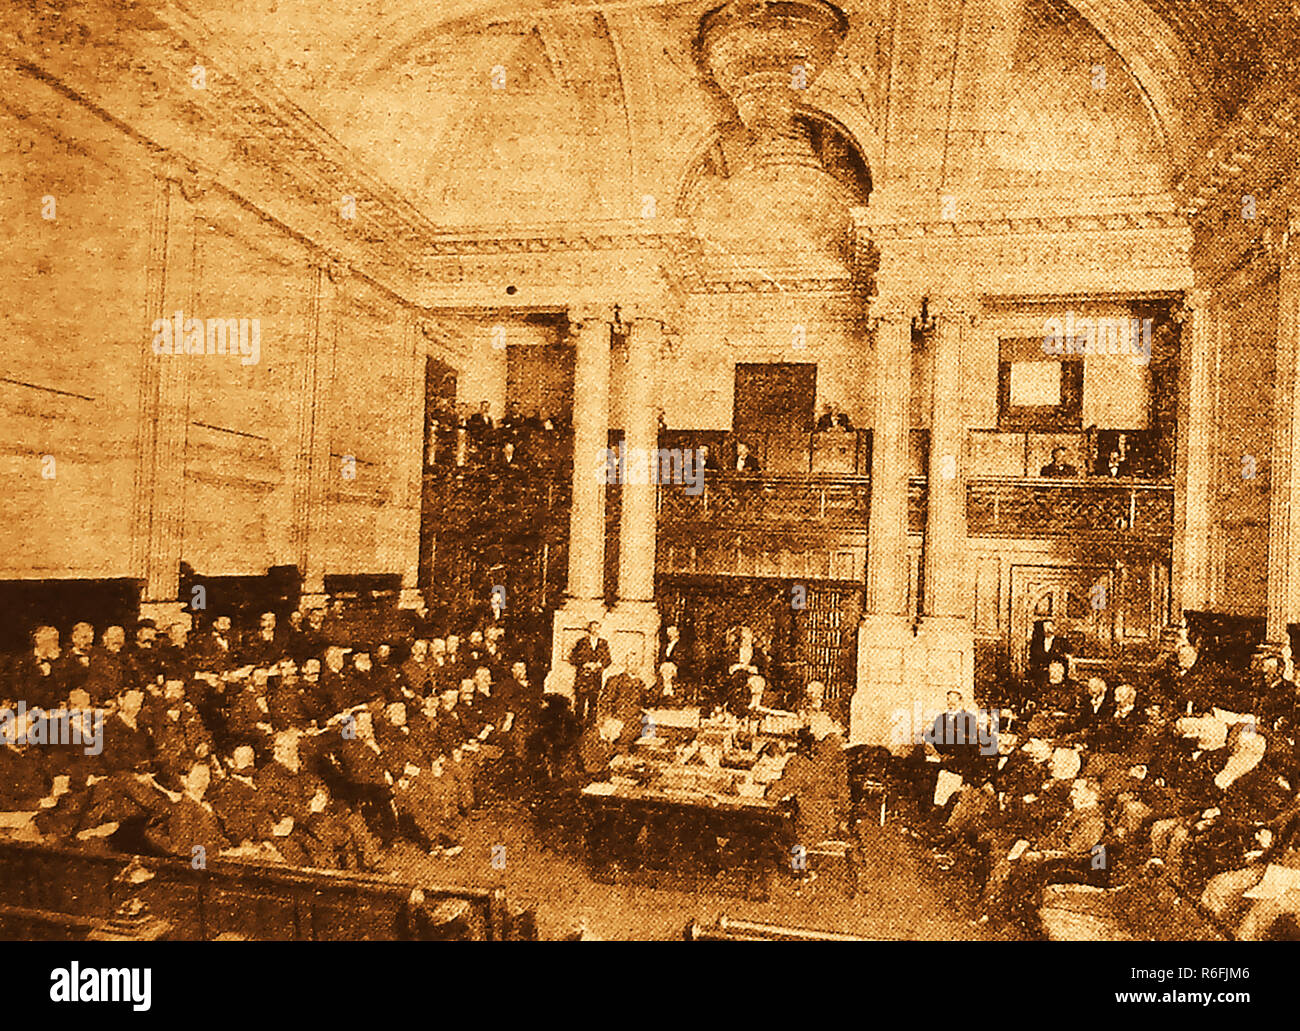 Une photographie d'une séance du Conseil législatif de Victoria, en Australie, dans les années 1800 Banque D'Images